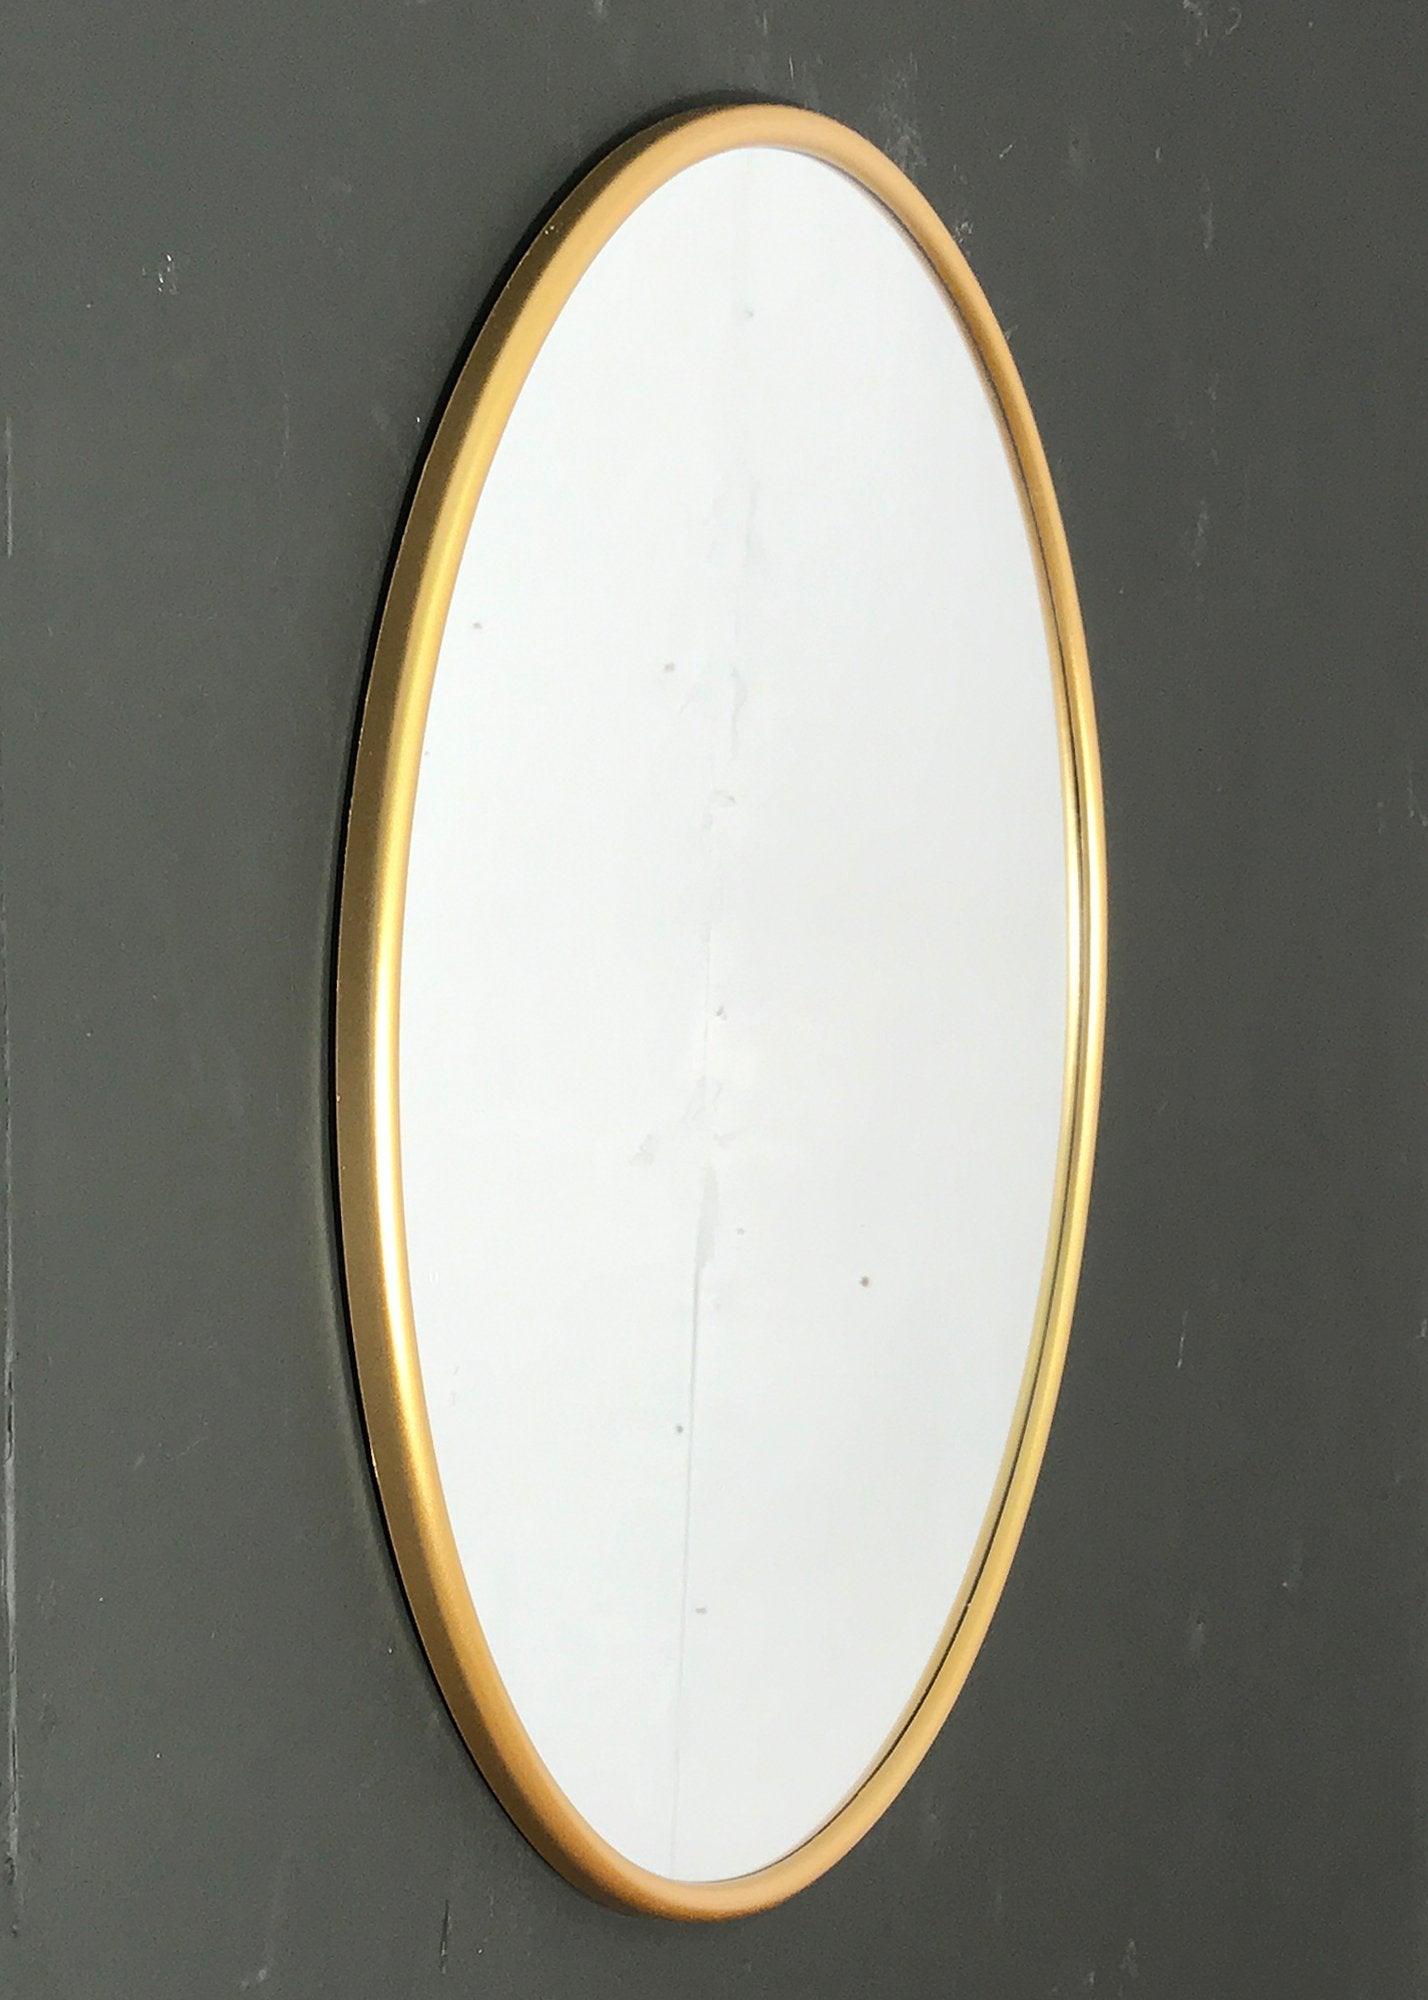 Round Gold Mirror - £44.99 - Mirrors 